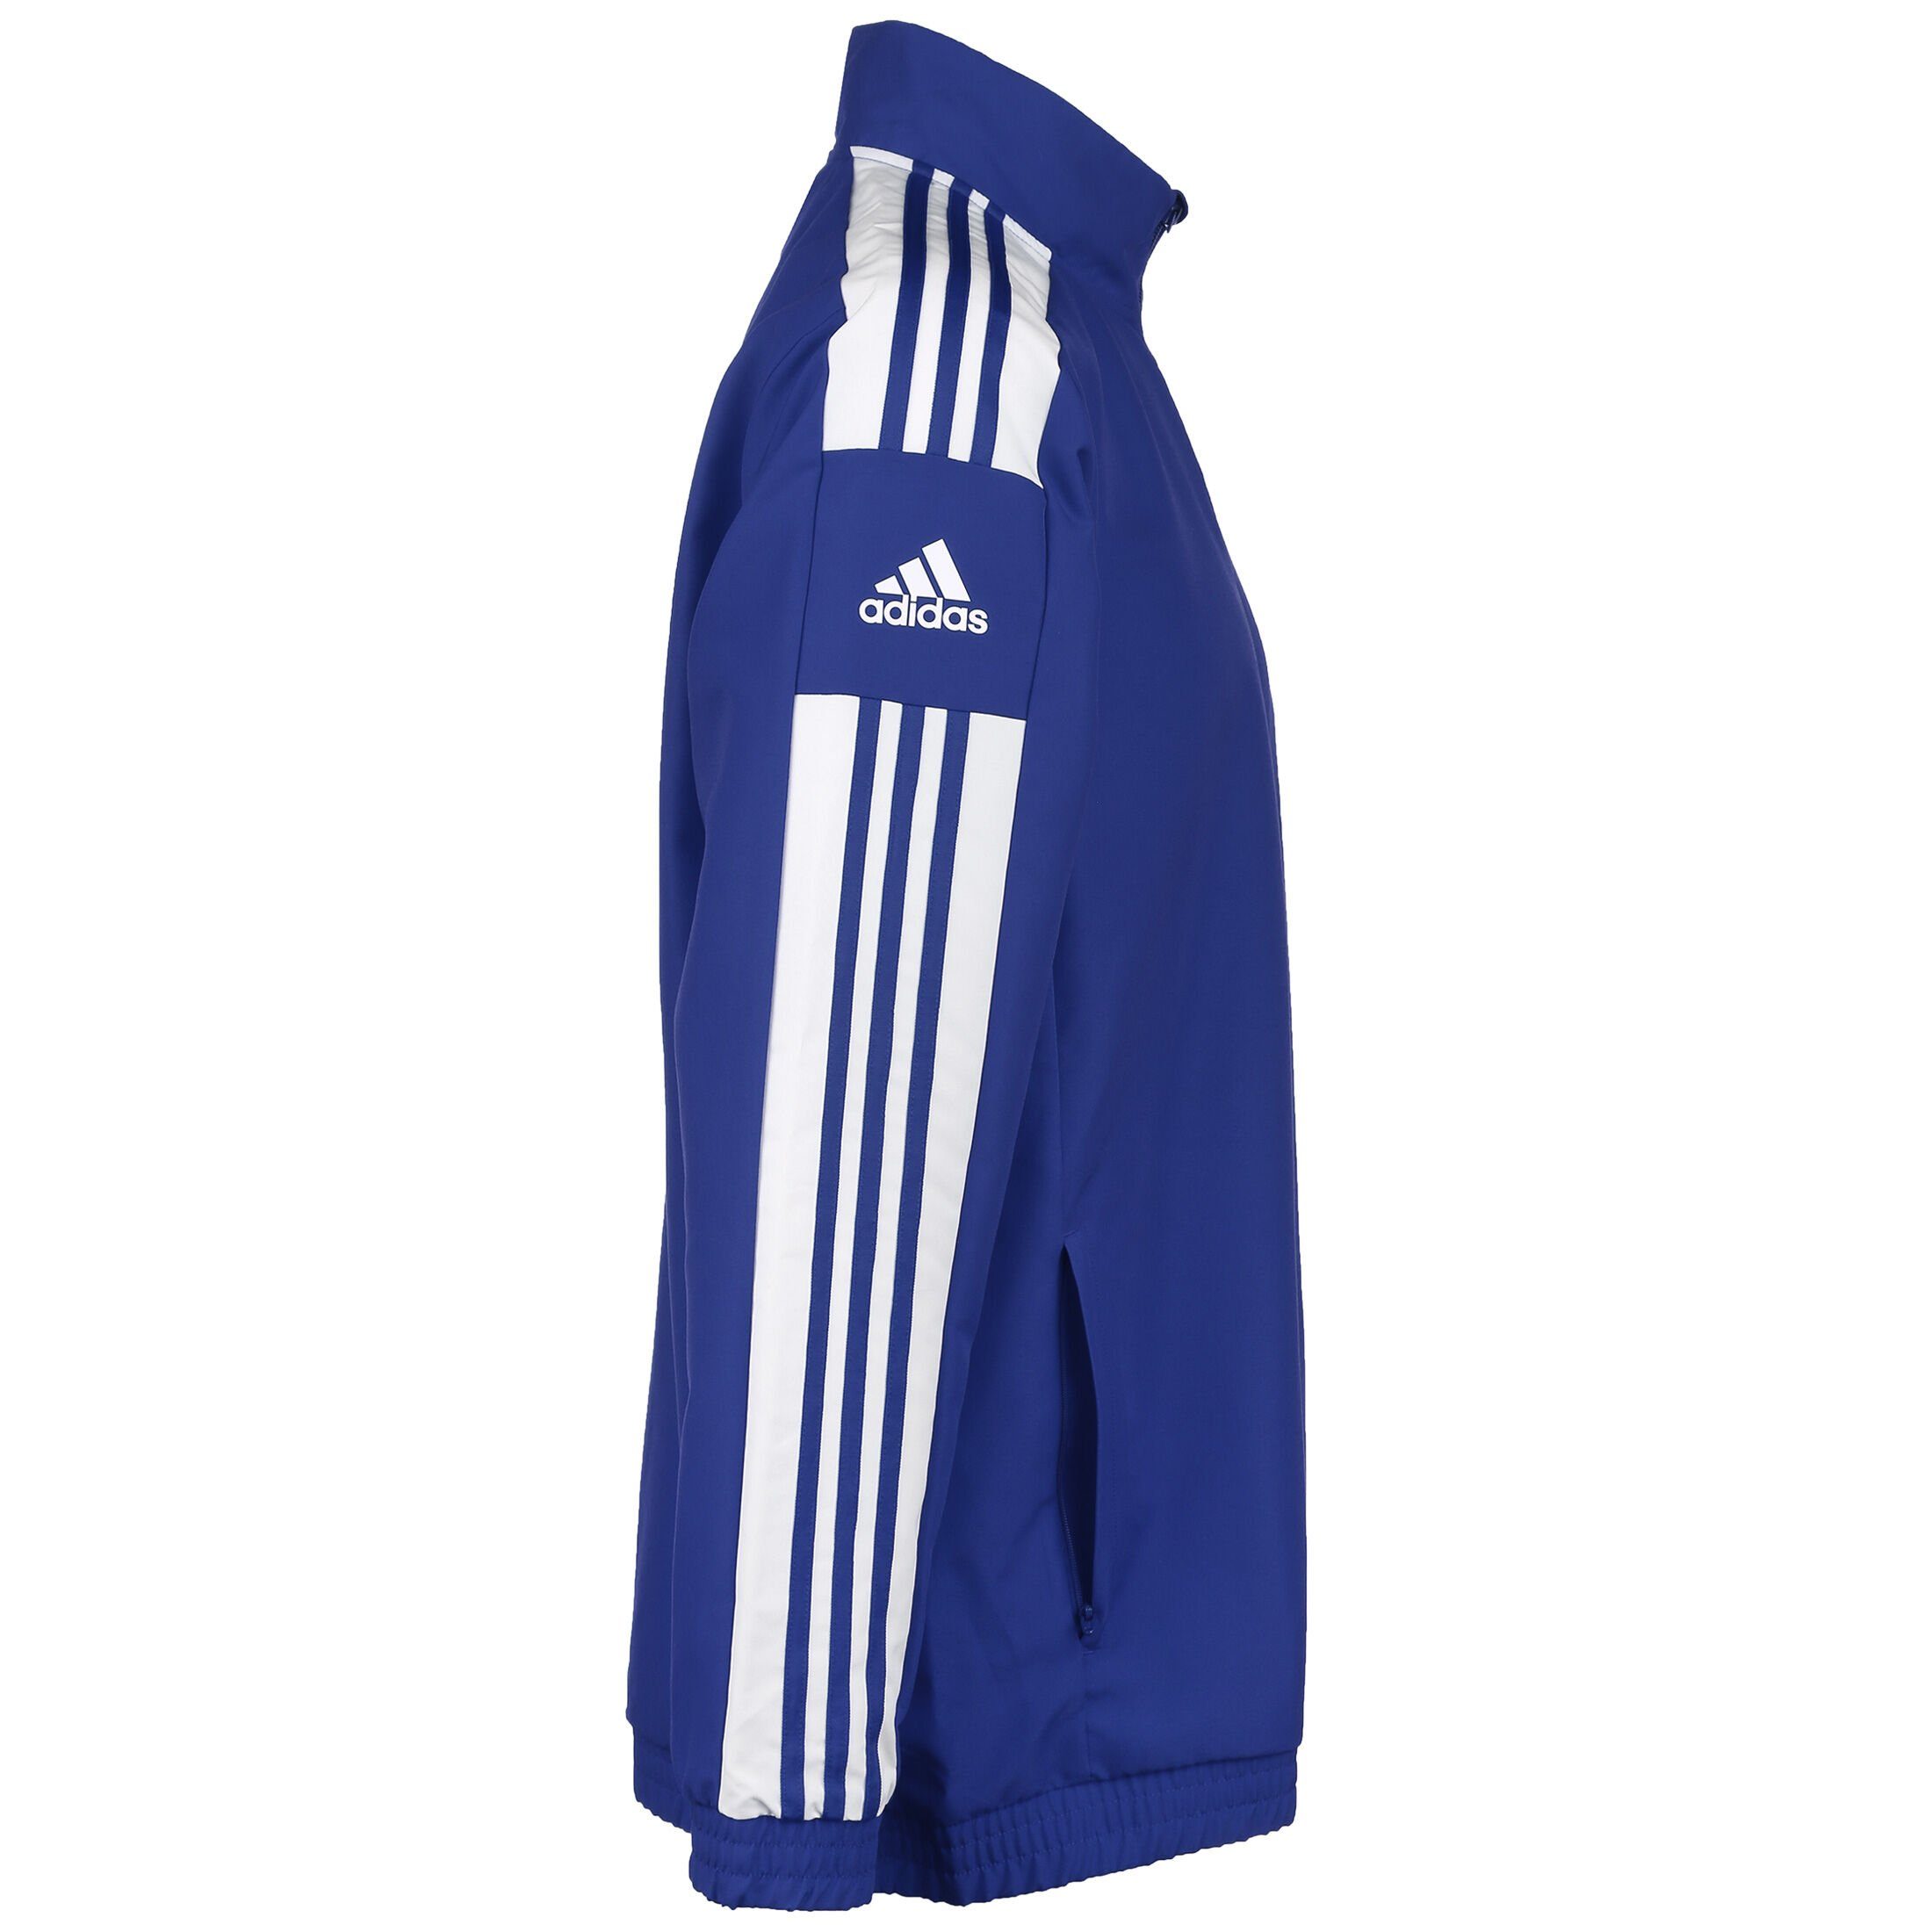 Squadra Performance blau Präsentationsjacke Herren weiß / 21 adidas Trainingsjacke